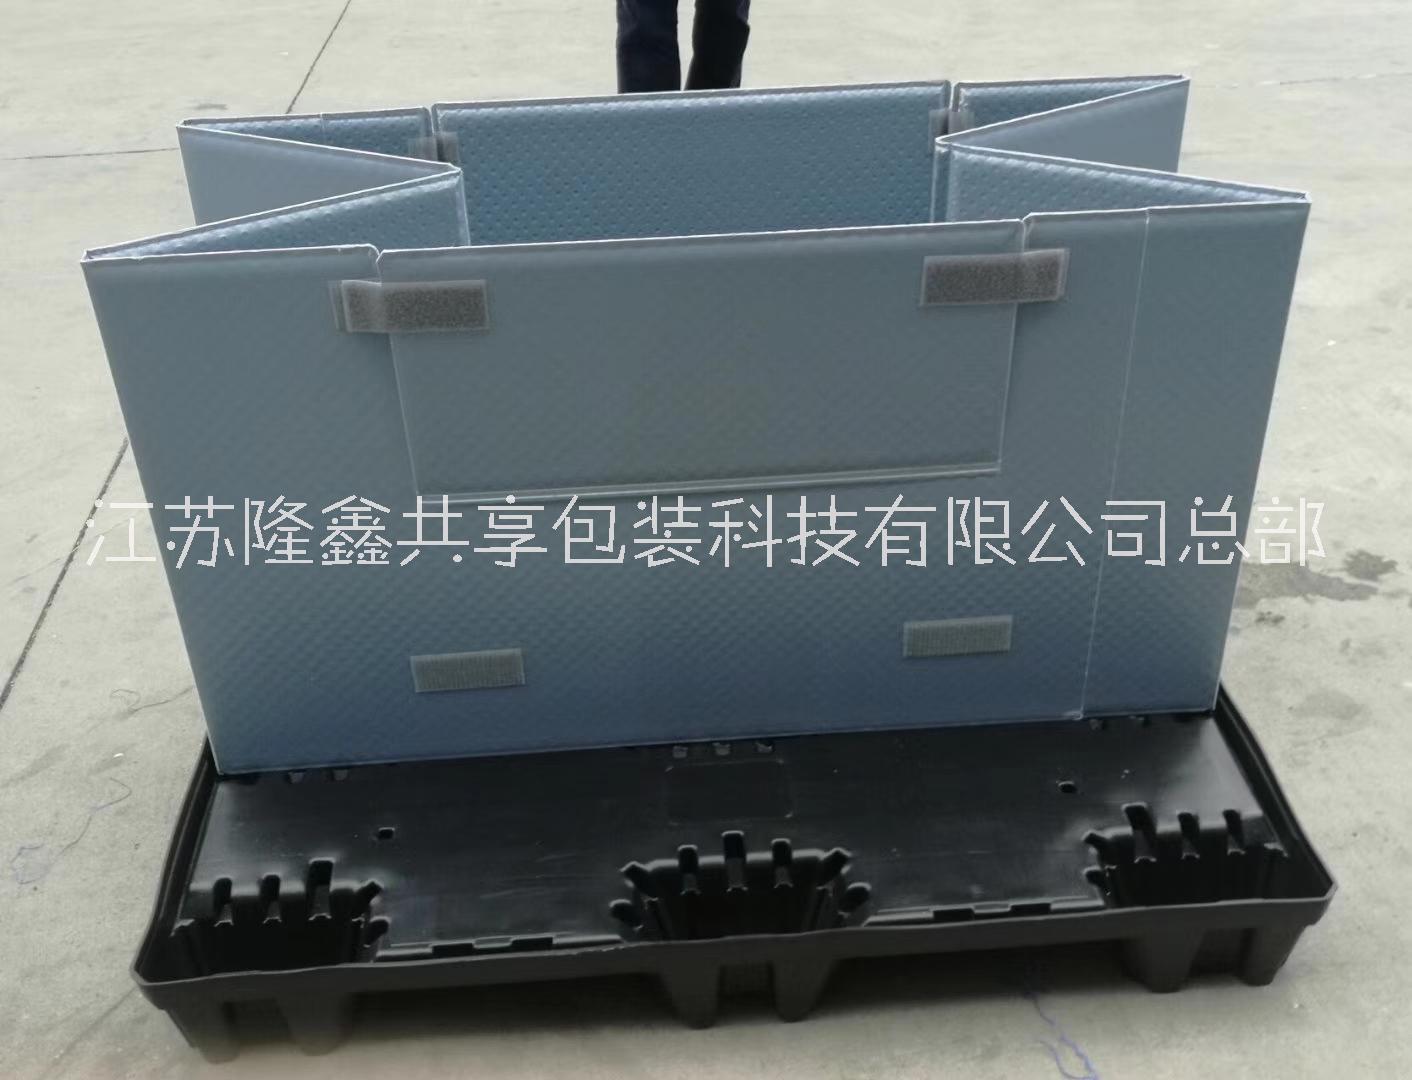 厂家直销LX1208塑料围板箱 可折叠循环使用围板箱 高承重包装箱 质量保证 价格从优 折叠围板箱